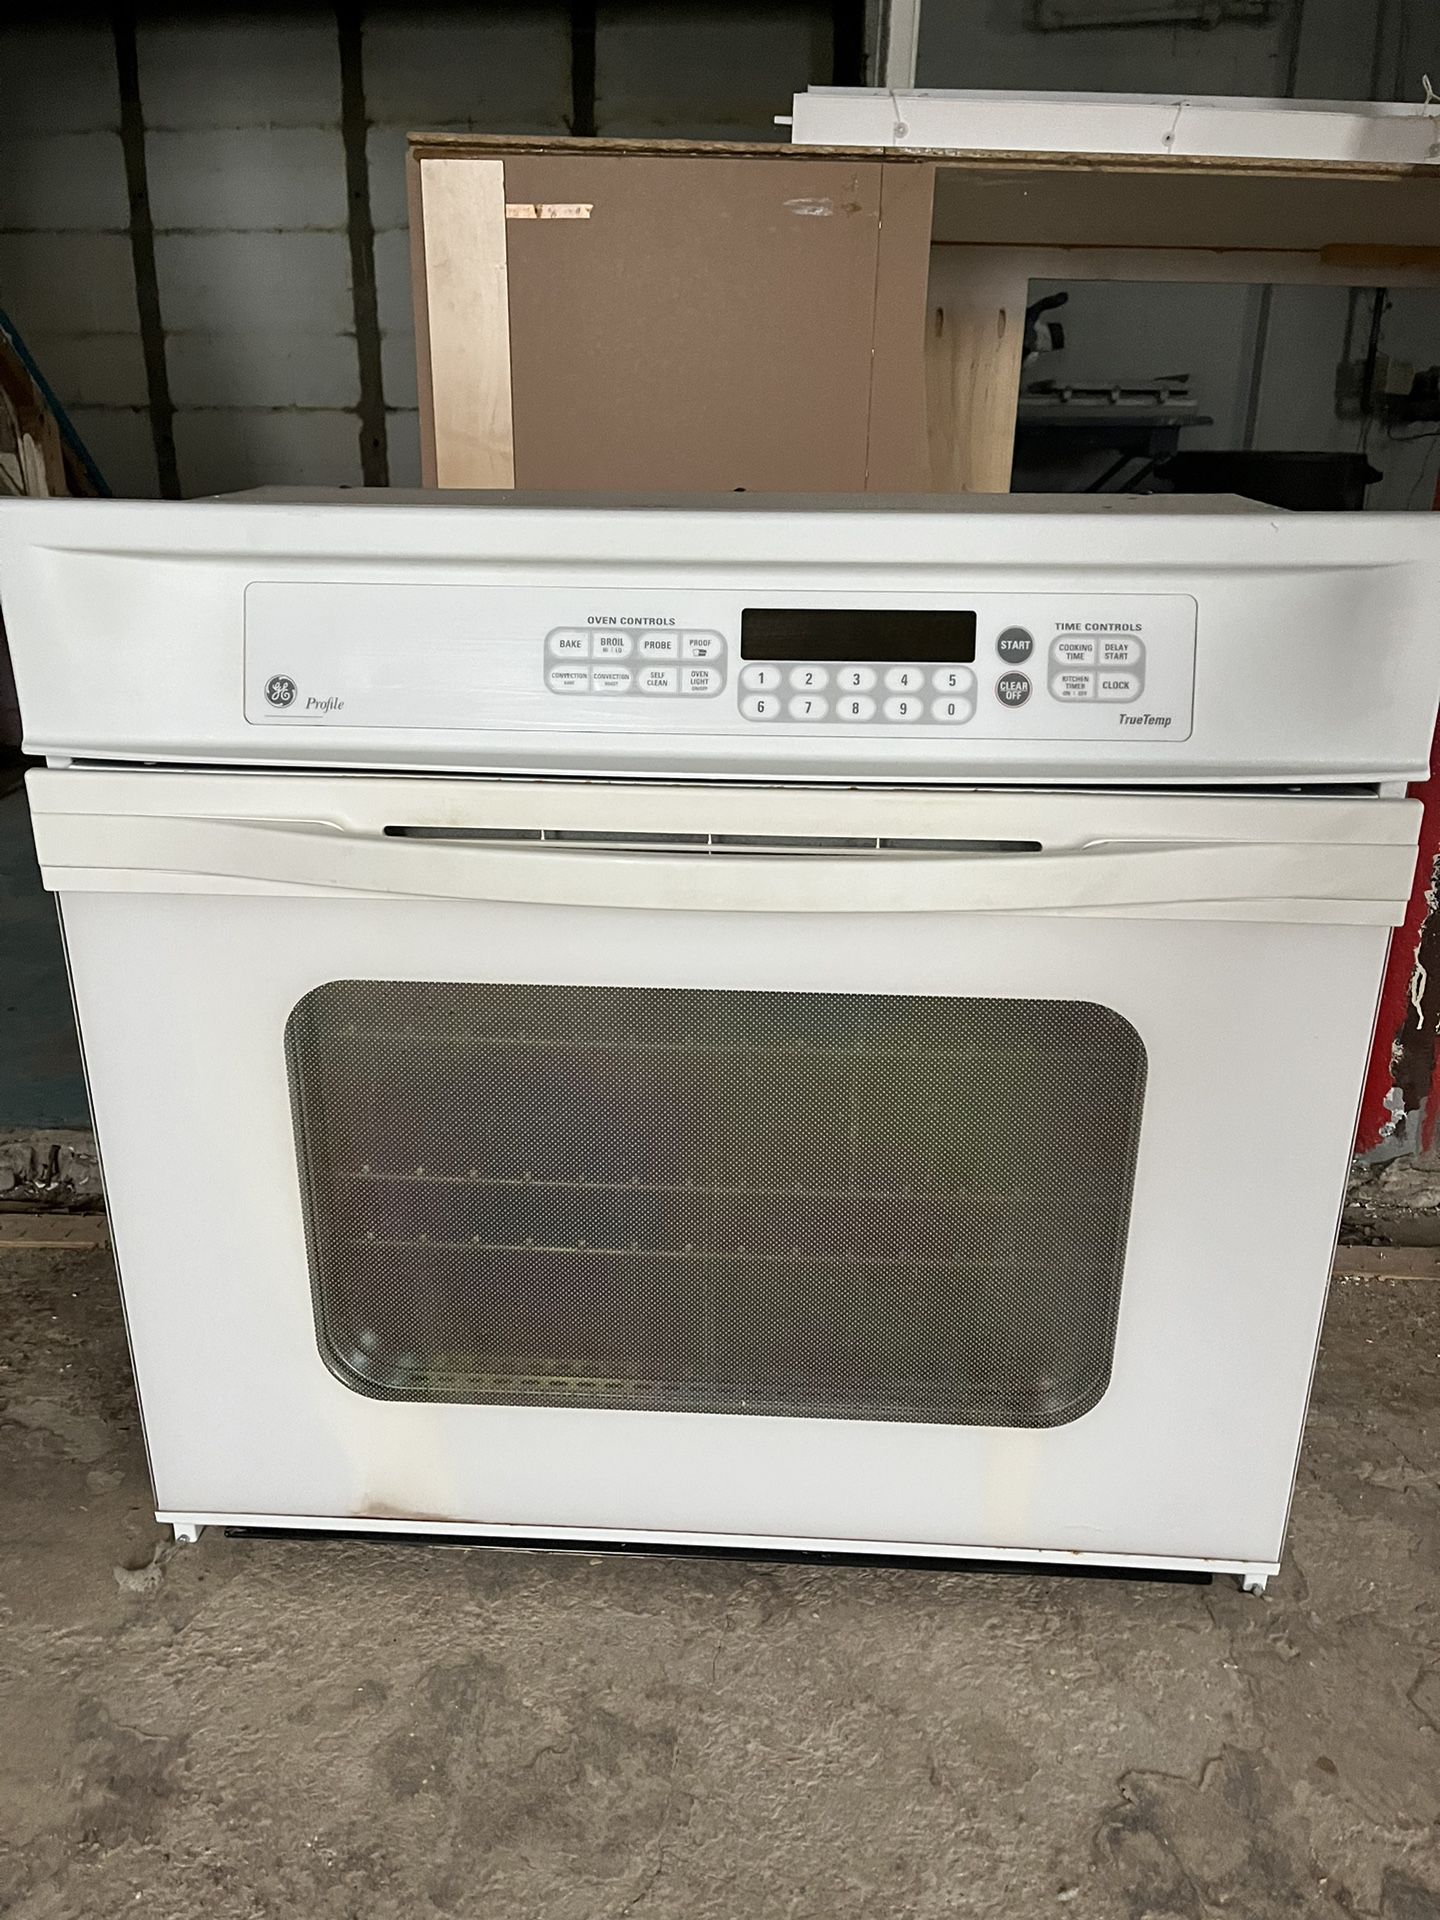 Kitchen Appliances-oven, Stove, Dishwasher 